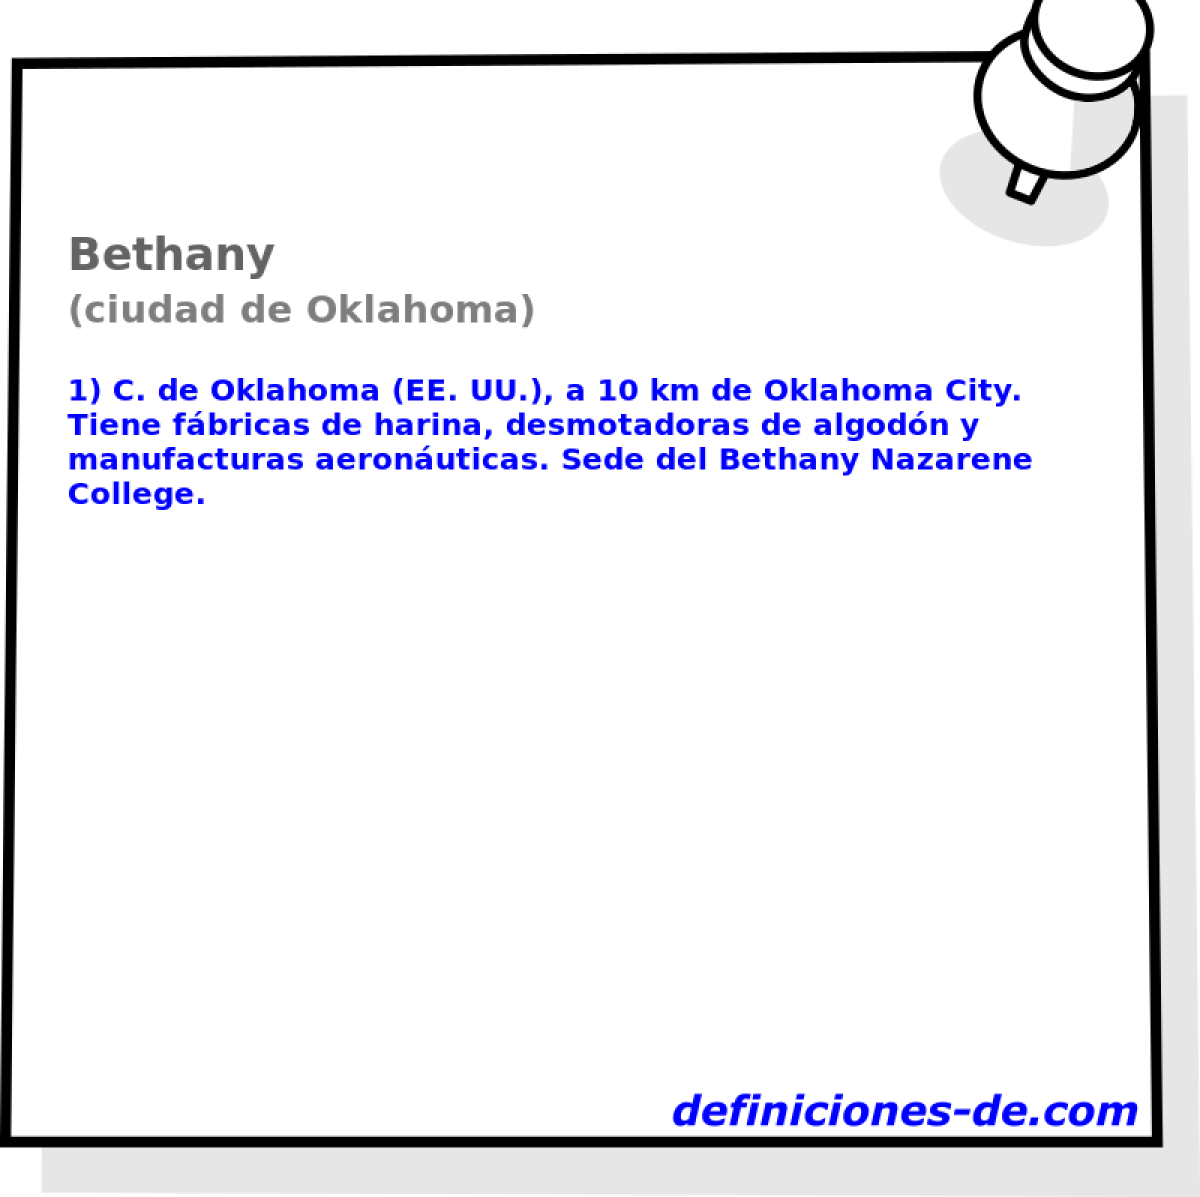 Bethany (ciudad de Oklahoma)